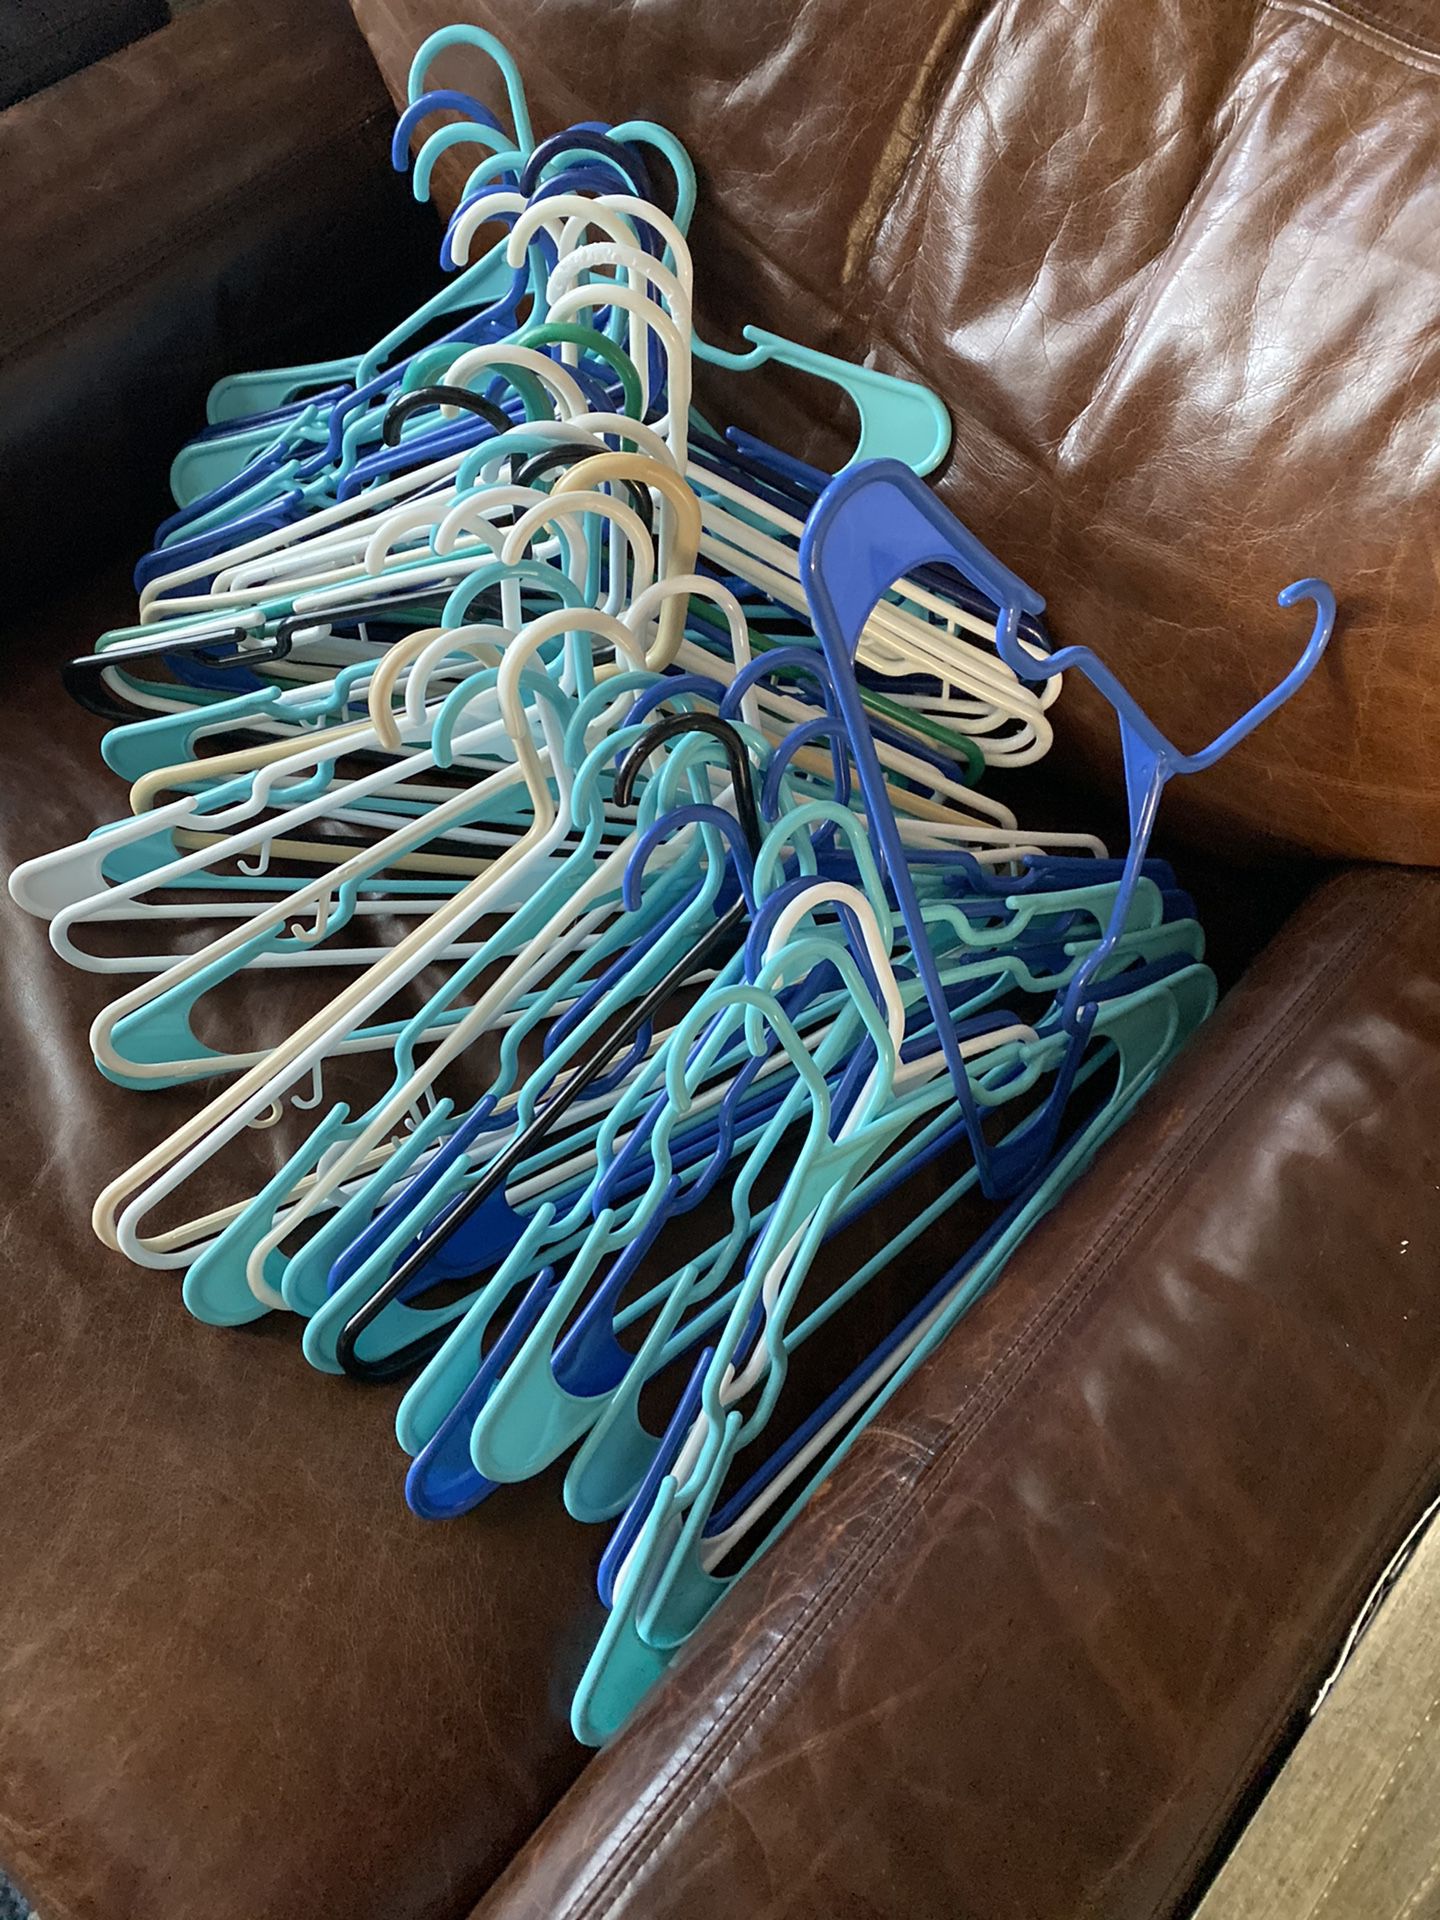 Free plastic hangers